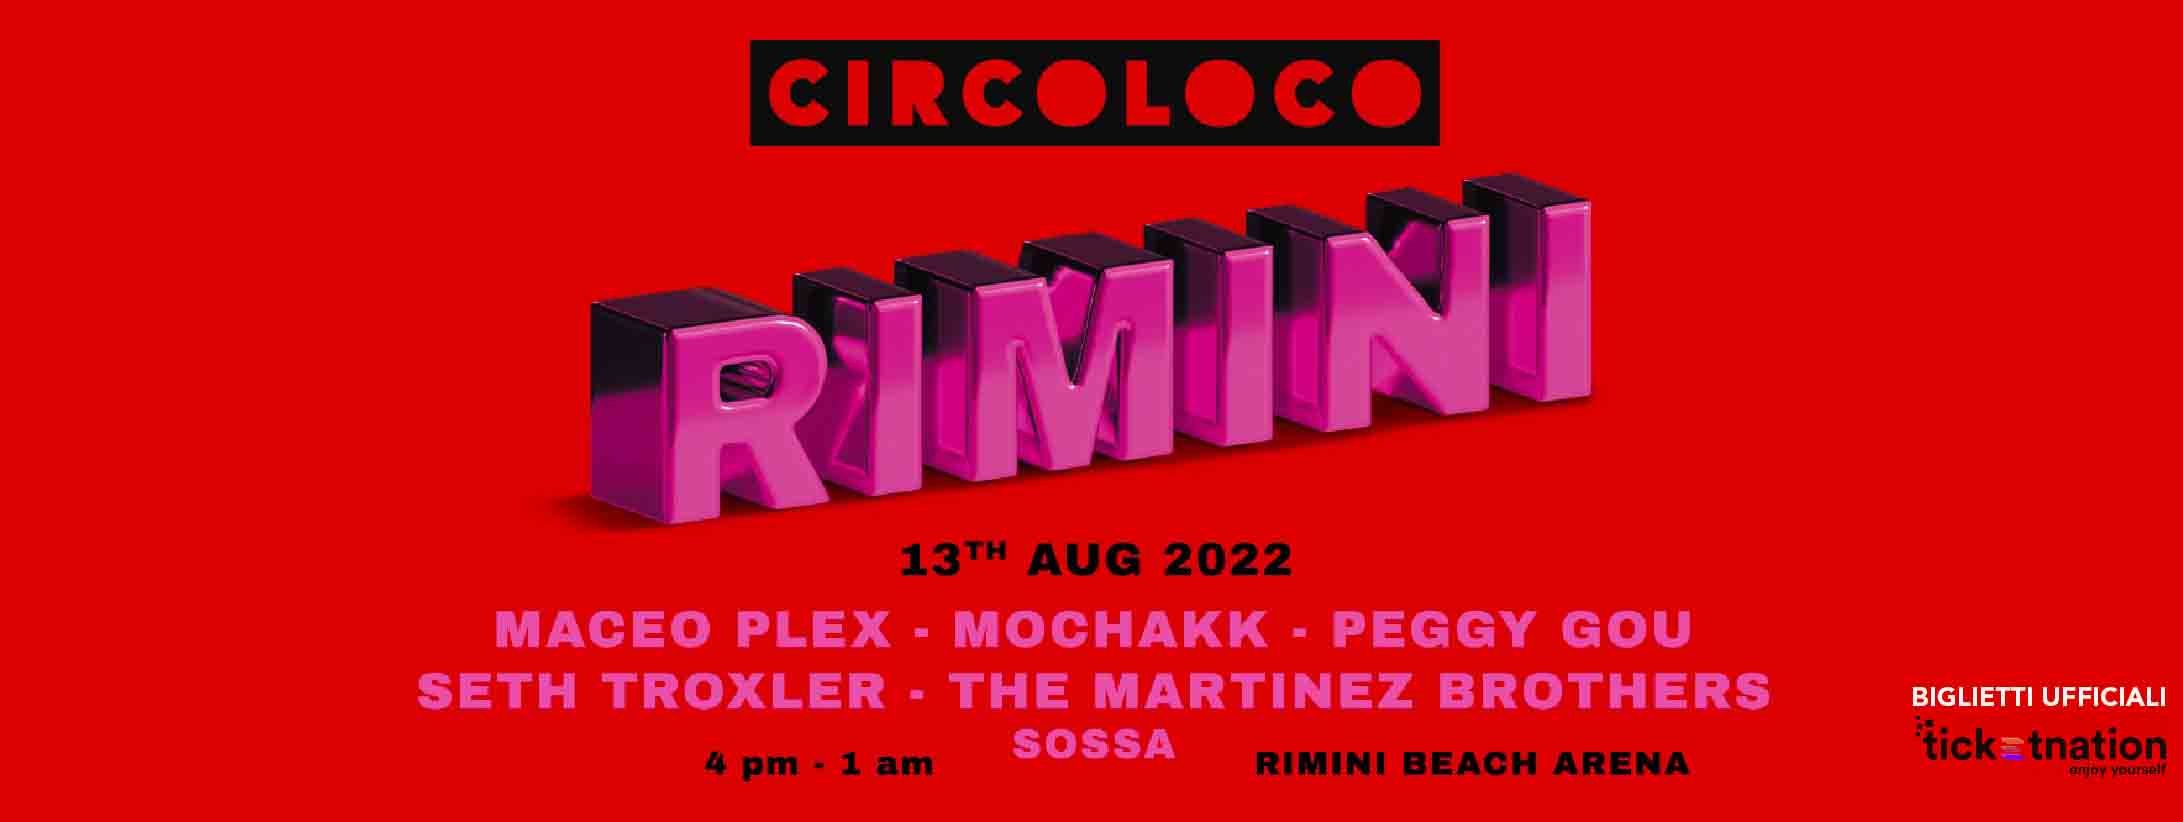 circoloco-rimini-beach-arena-13-08-2022